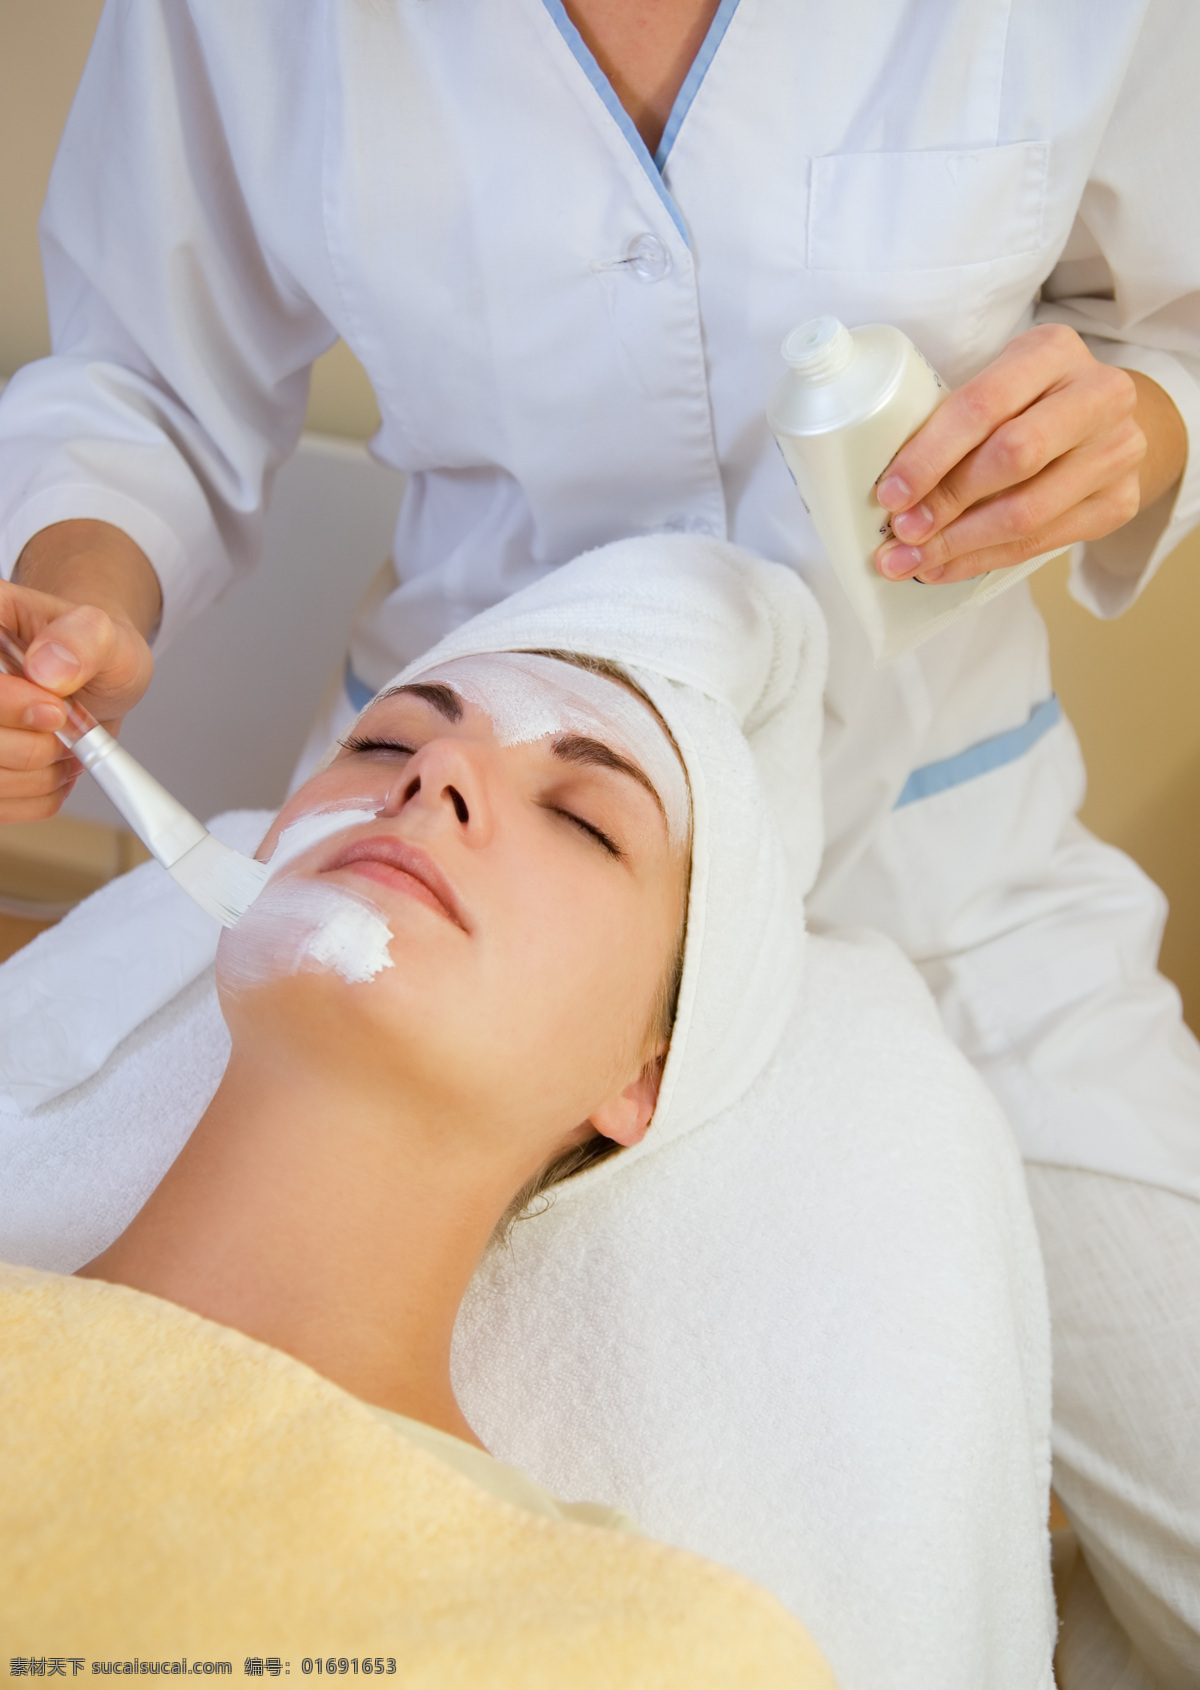 护理 面部 面部护理 按摩 面膜 面霜 spa 女人 美女 女性 女性按摩 美容 美容院 美容素材 生活素材 生活百科